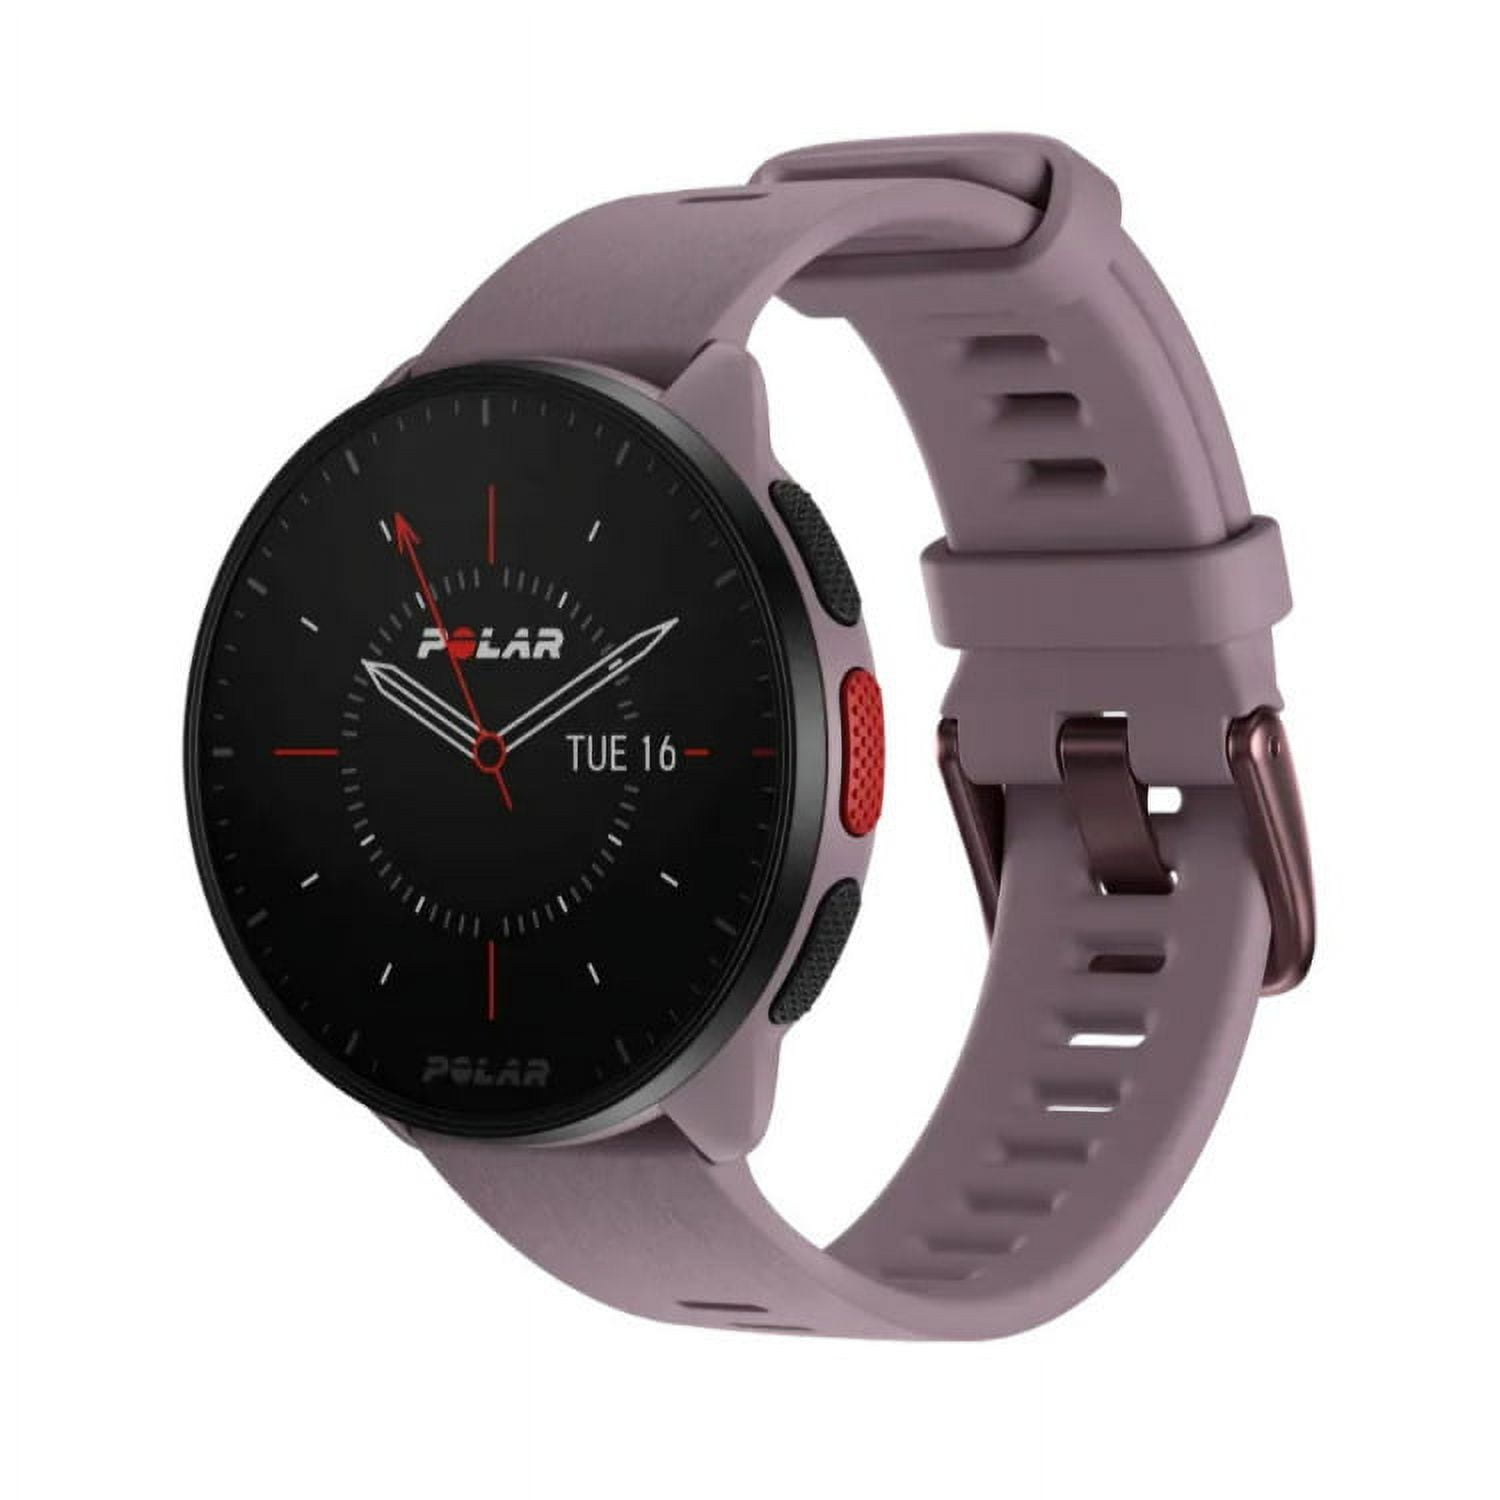 Polar Pacer, nuevos smartwatch perfectos para los runners, Gadgets